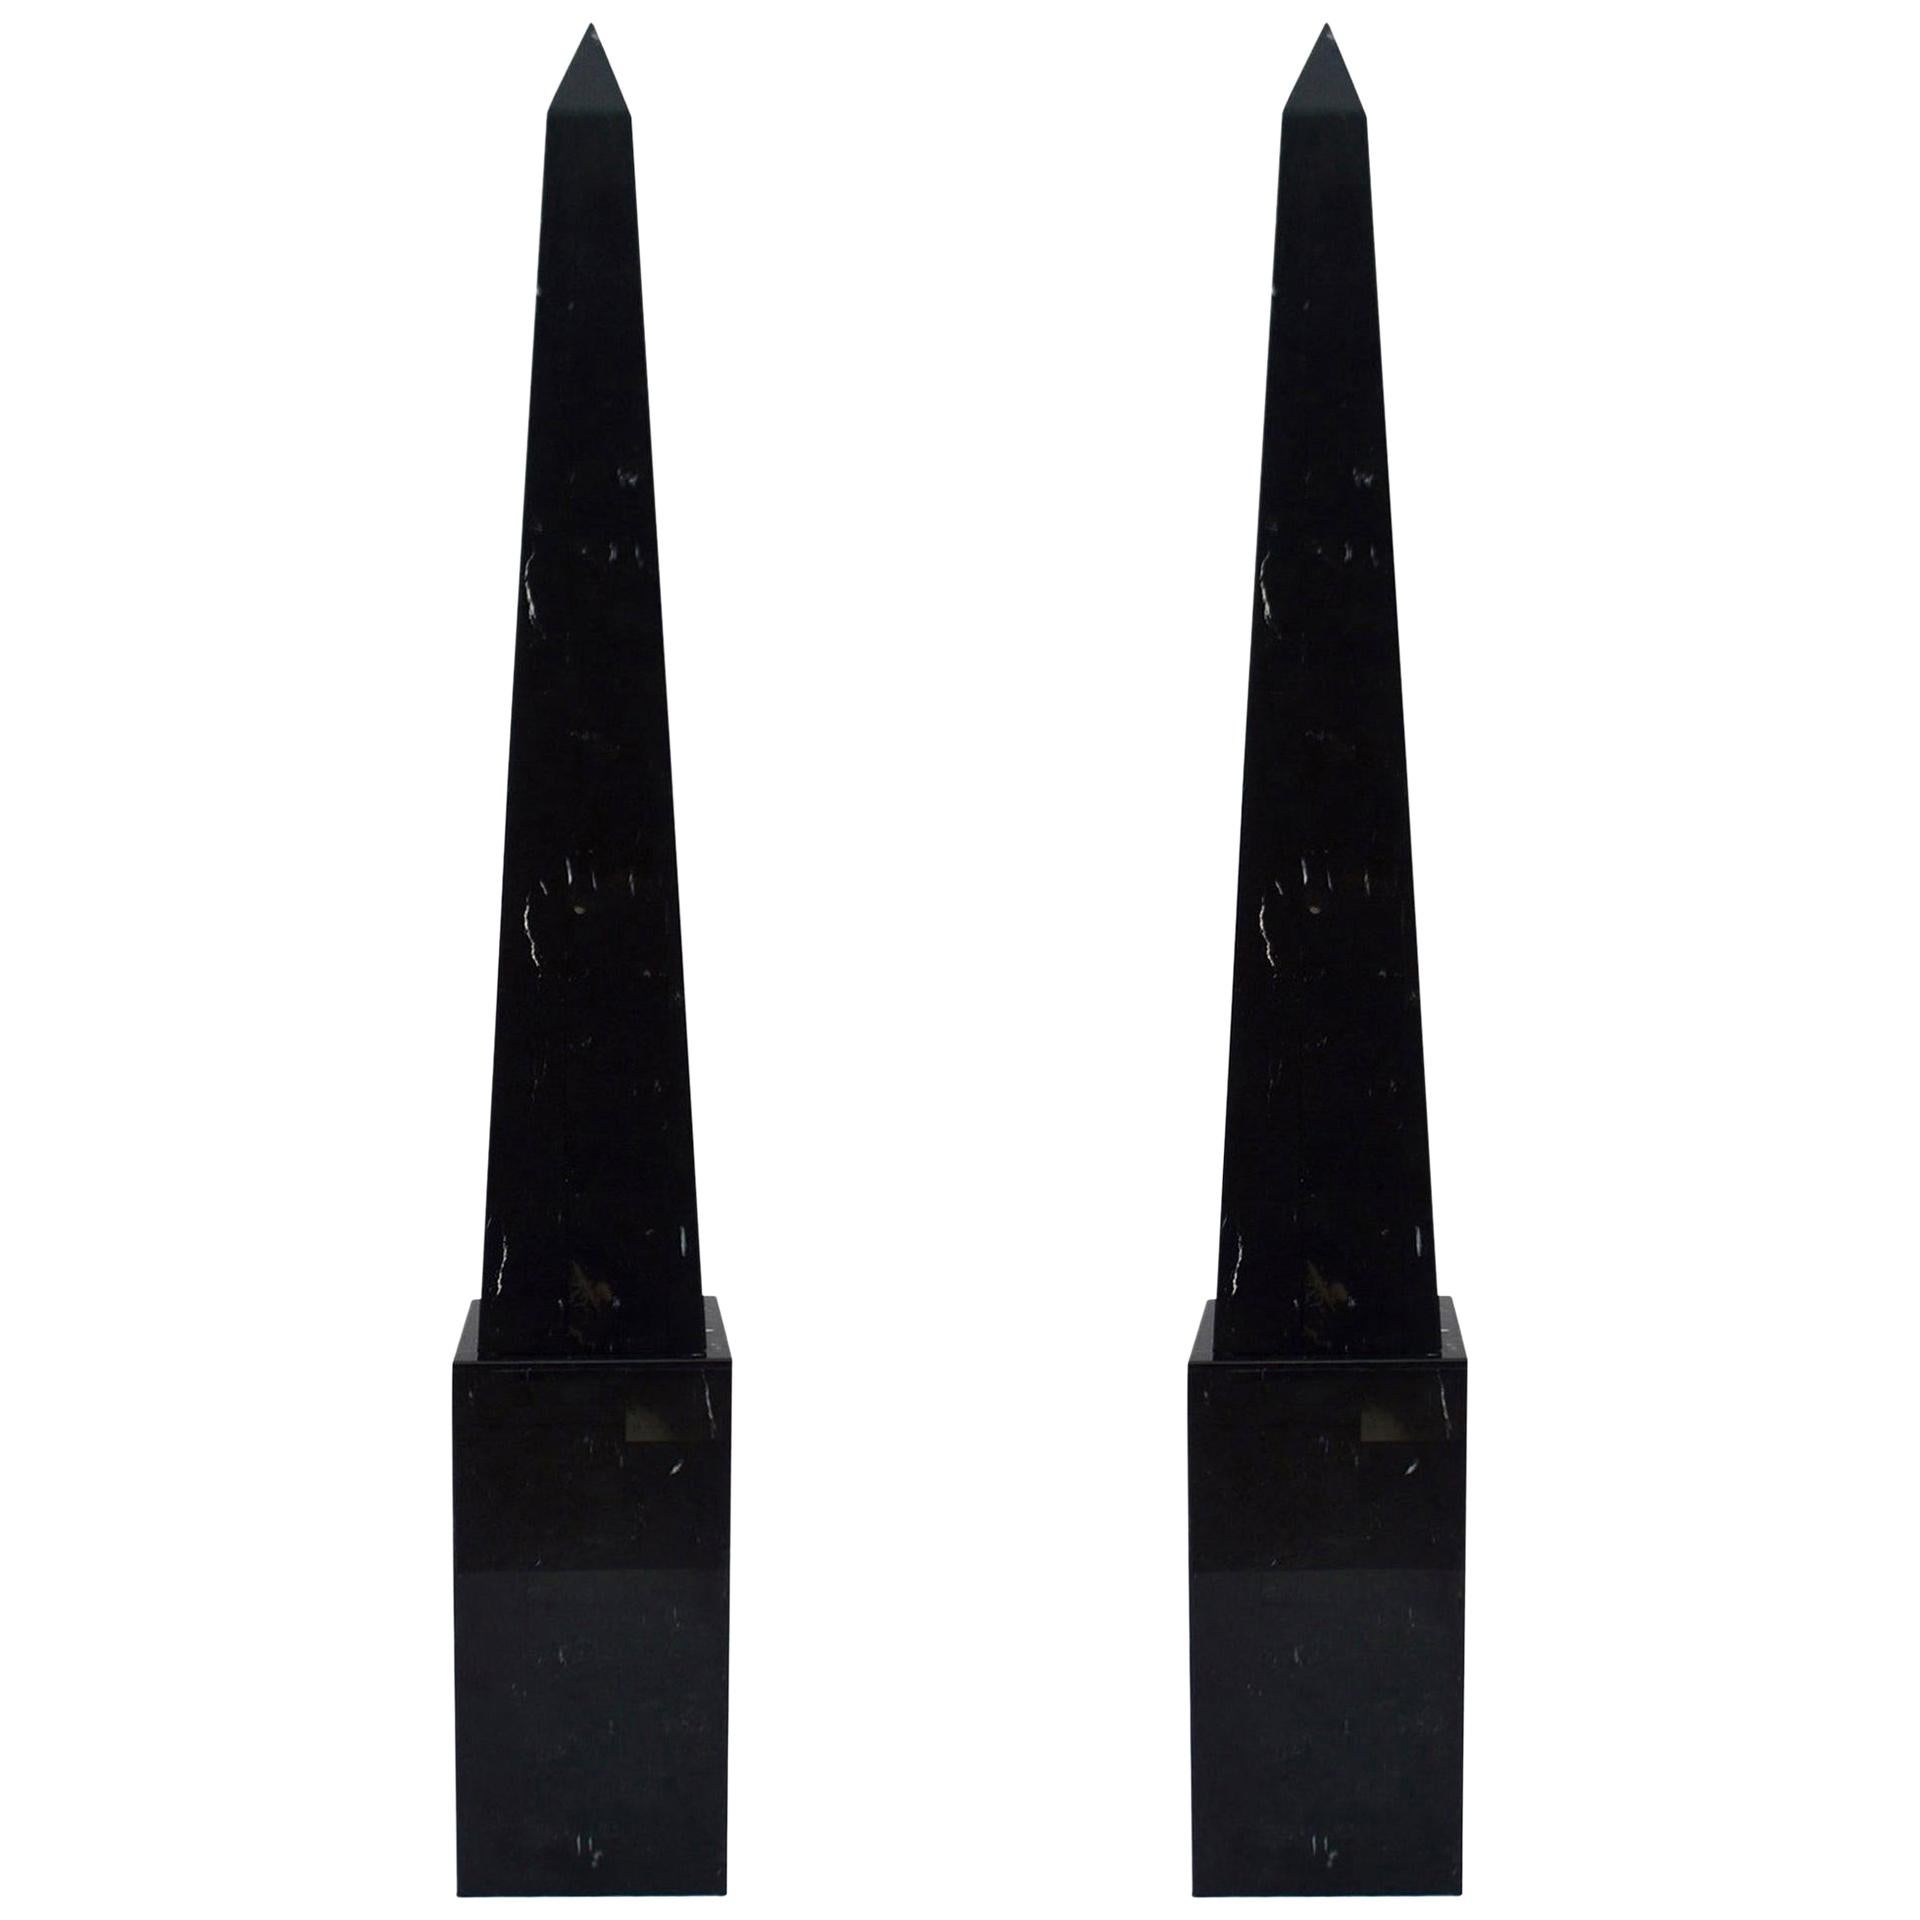 Pair of Black Marble Floor Obelisks